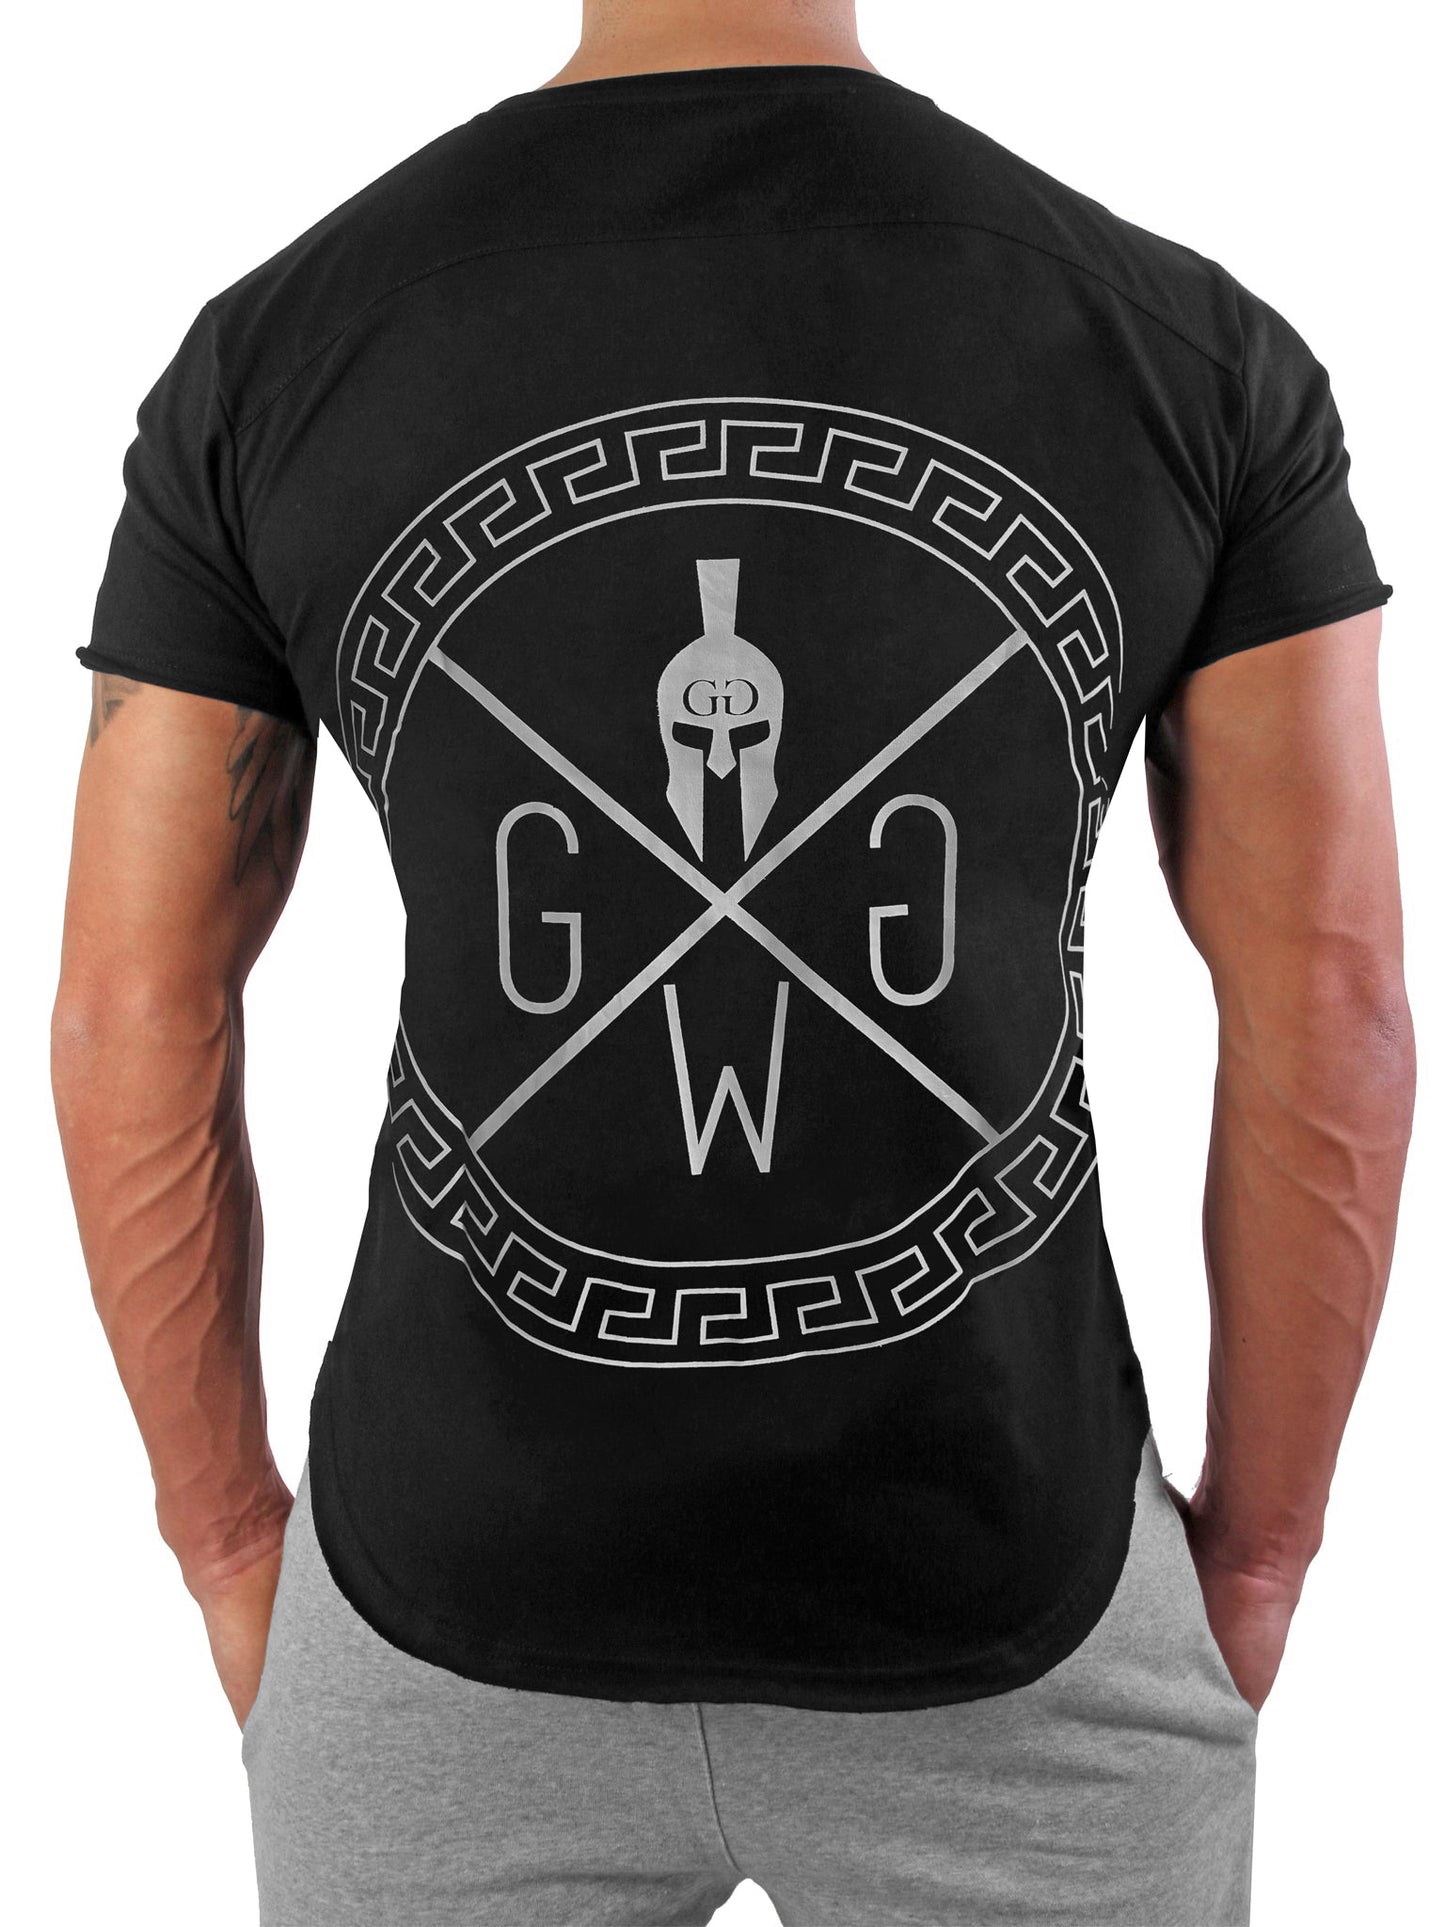 Schwarzes Spartan T-Shirt von Gym Generation mit markantem dunkelgrauem Warrior-Logo und griechischem Ornament-Kreis.